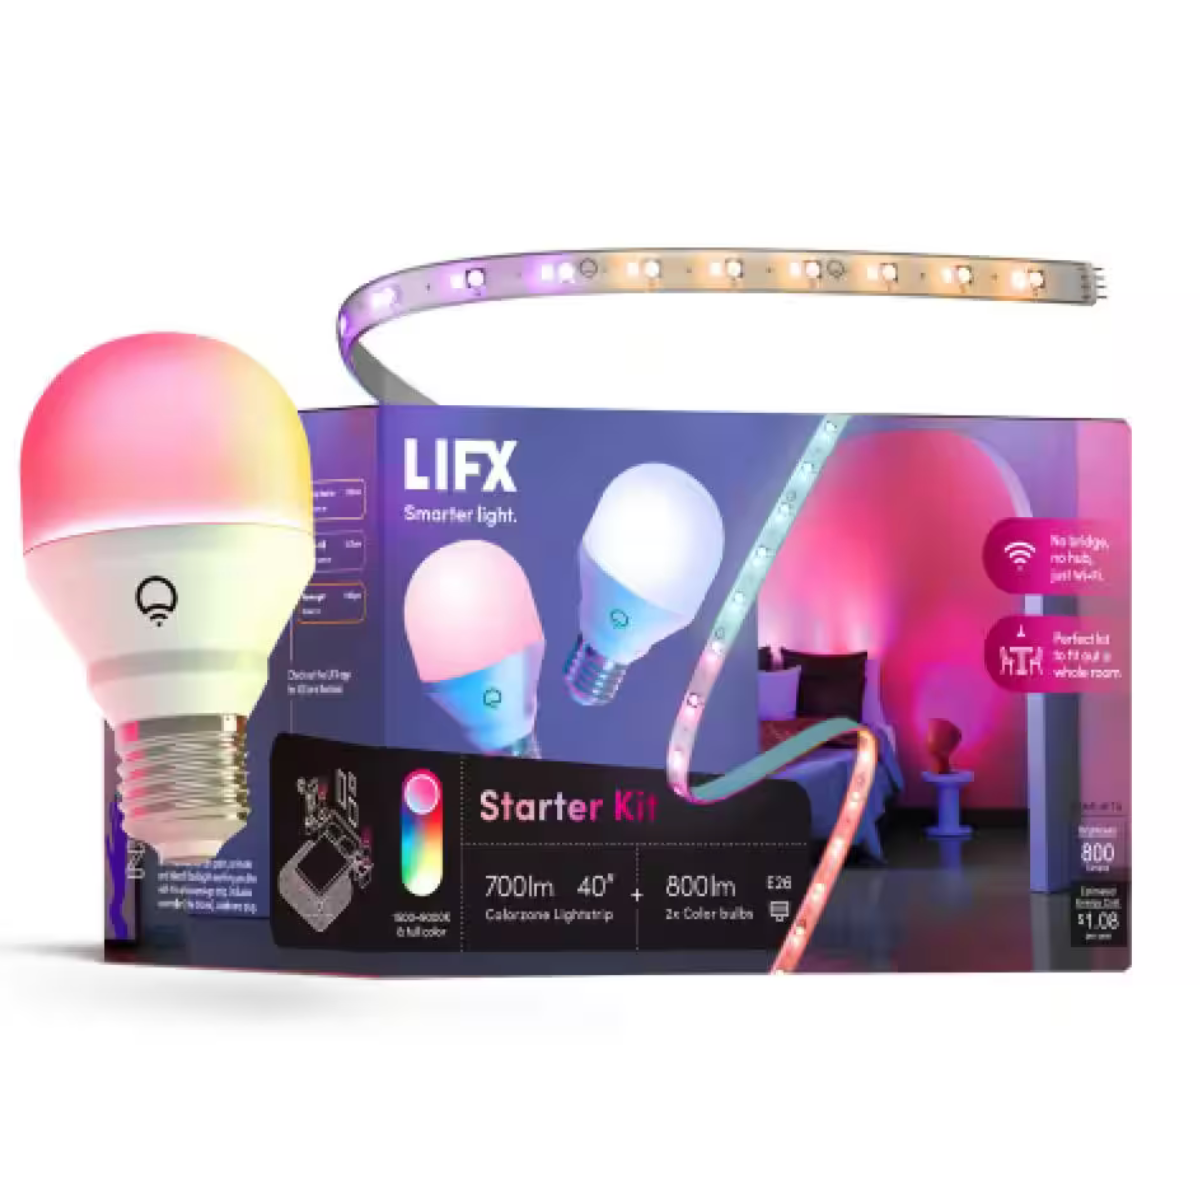 LIFX Candle Color E12